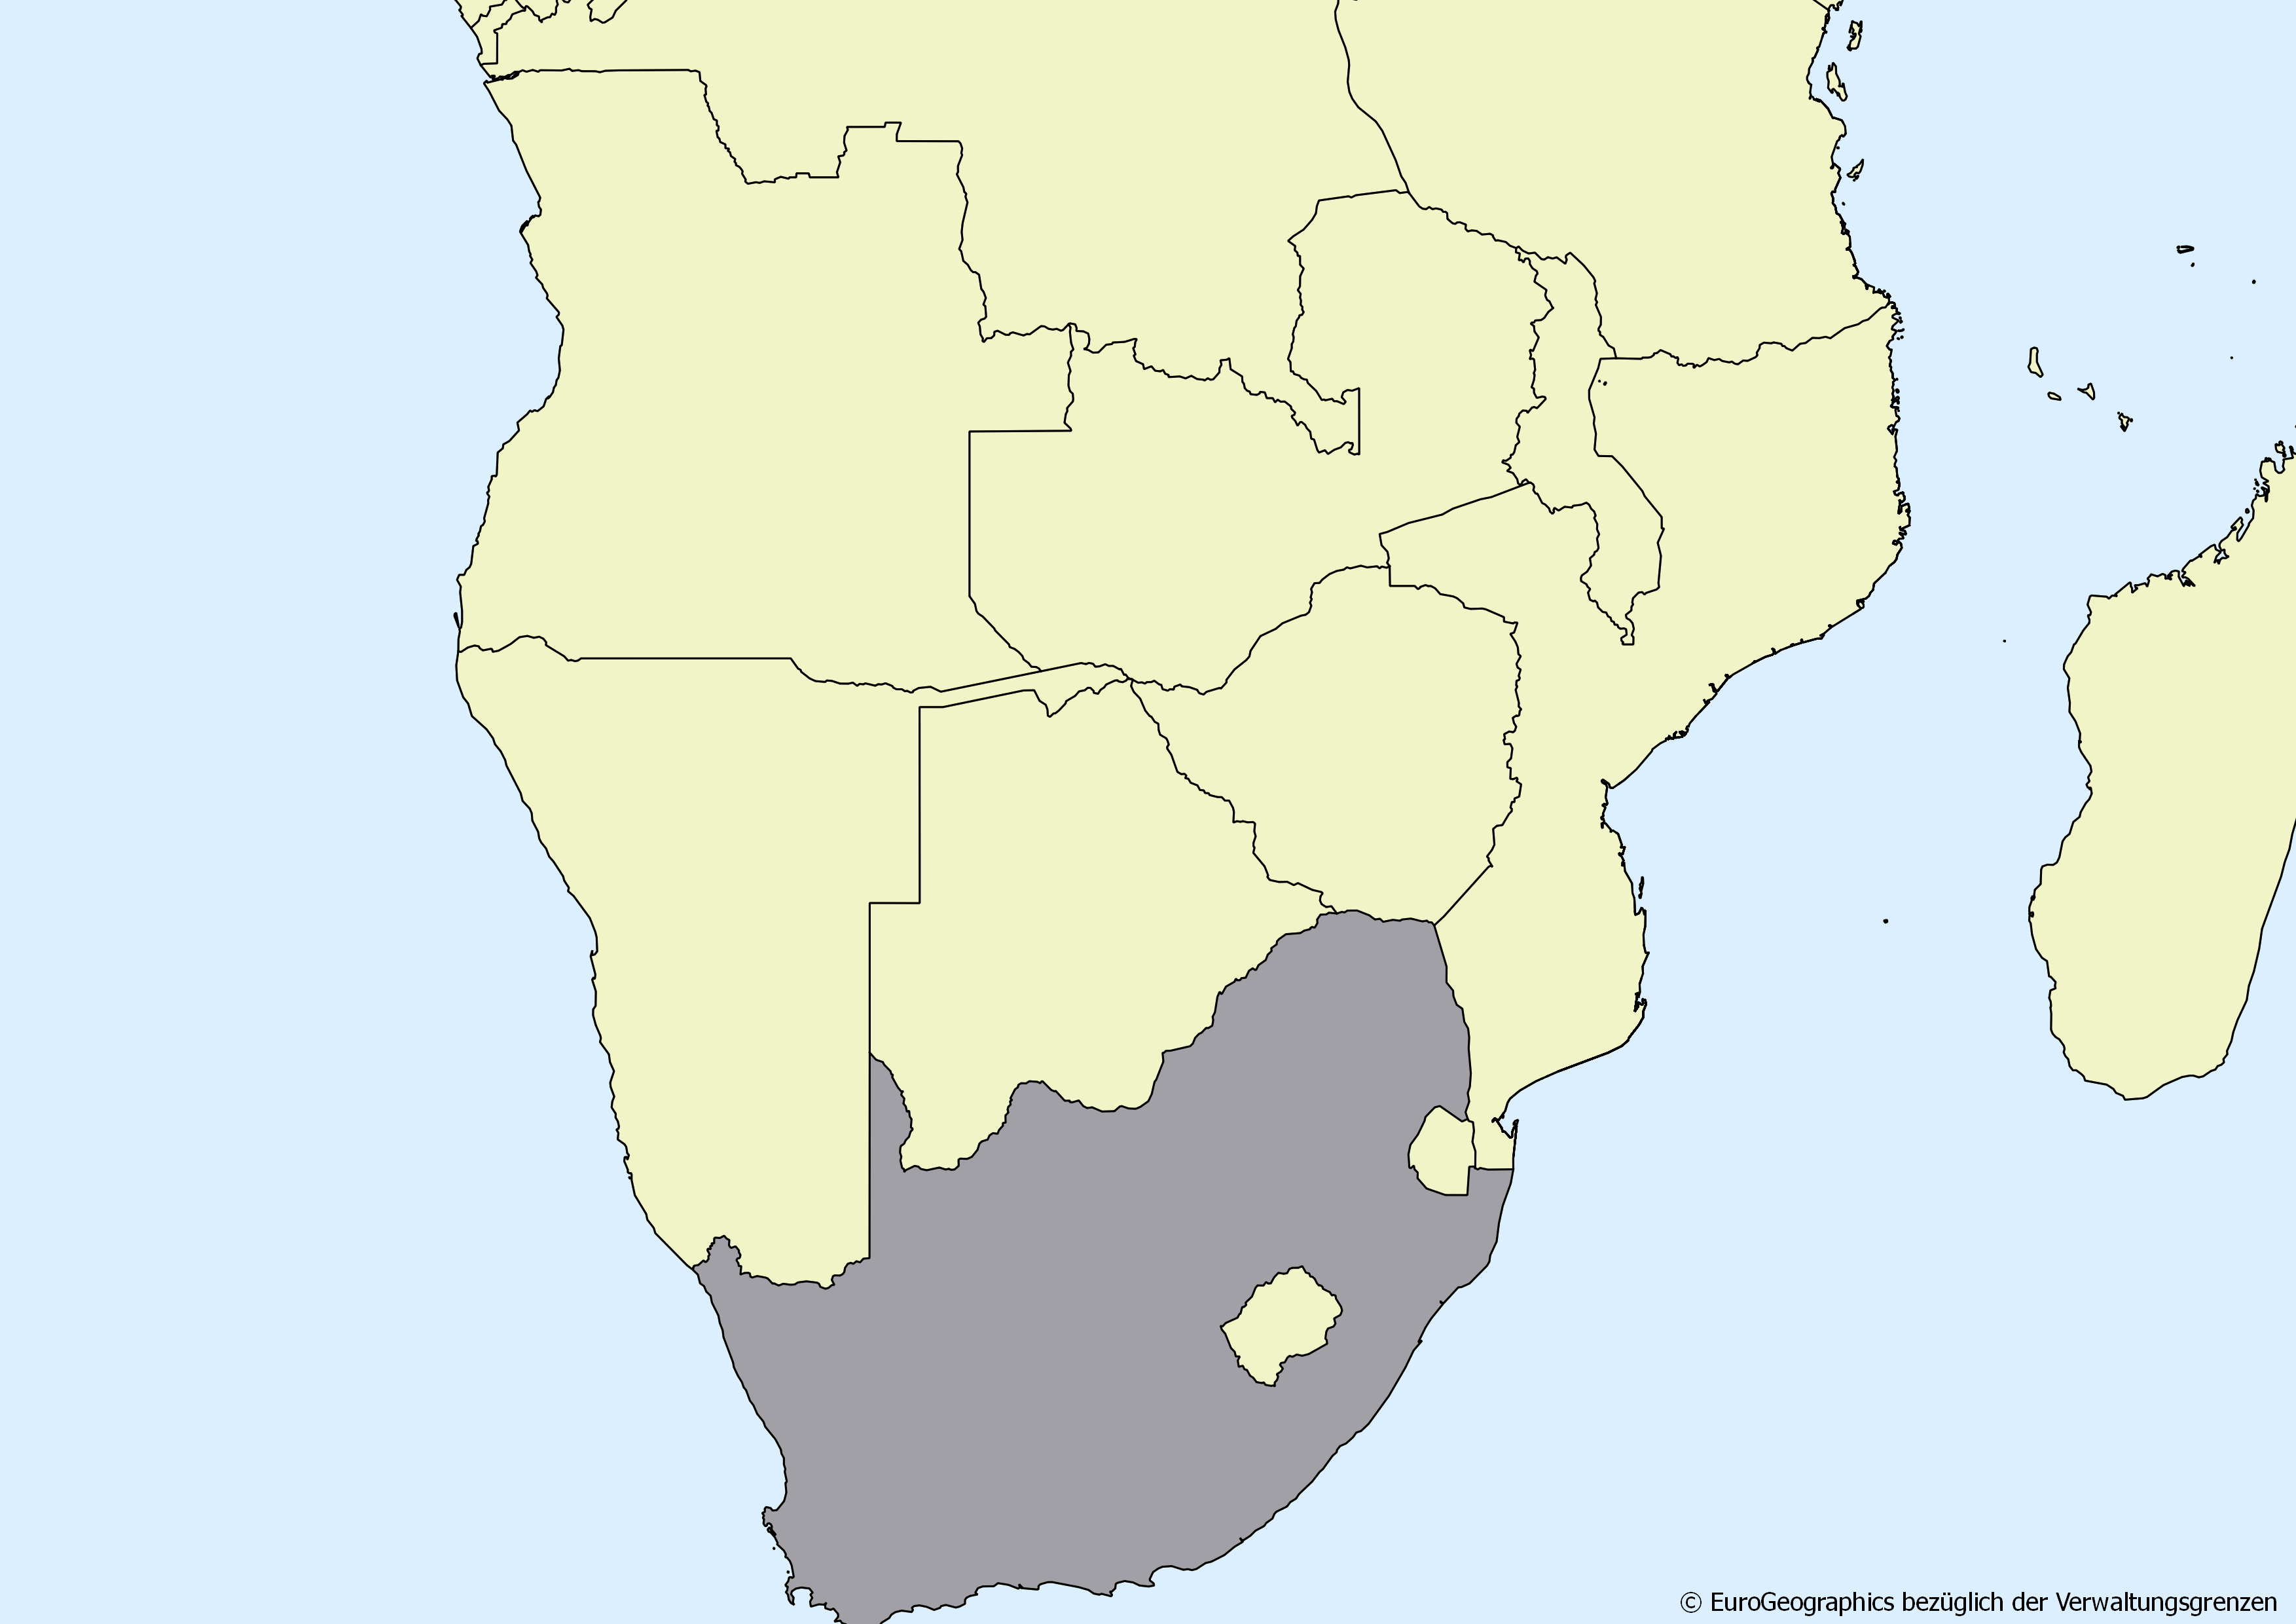 Ausschnitt einer Karte des afrikanischen Kontinents mit Ländergrenzen. Im Zentrum steht Südafrika grau hervorgehoben